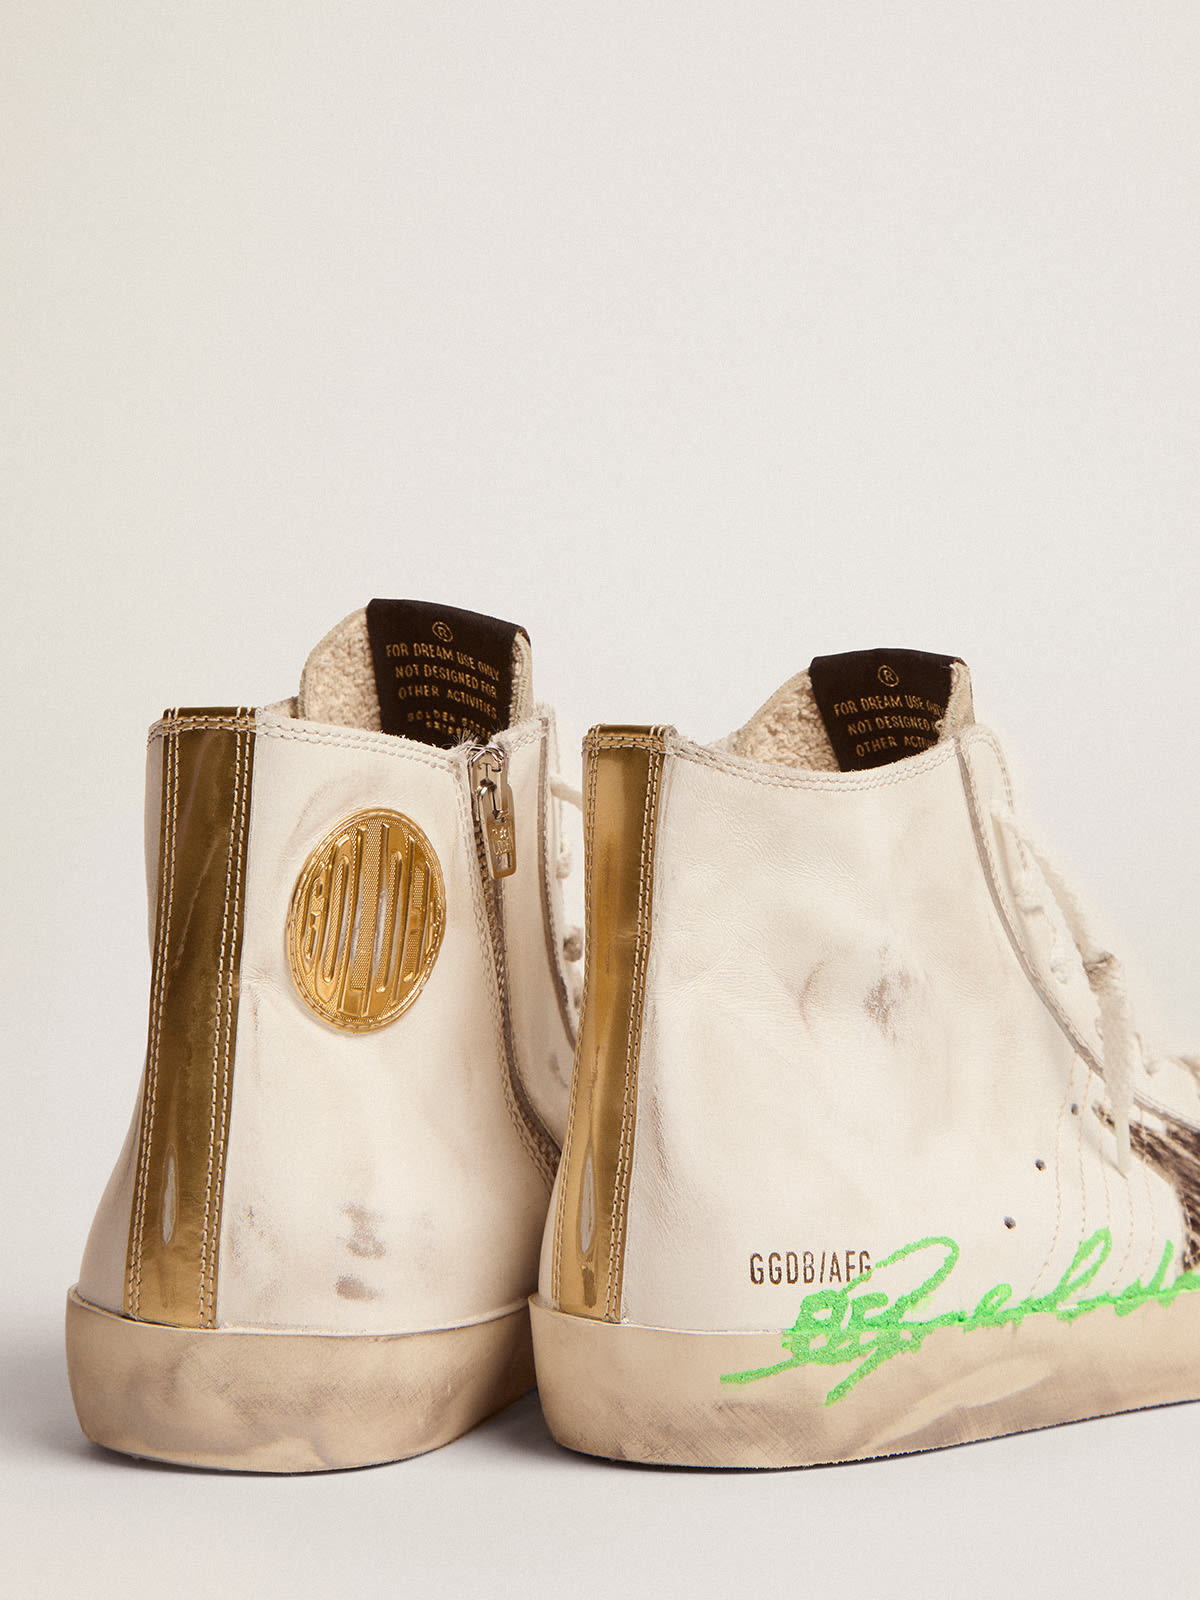 Golden Goose - Sneakers Francy Penstar LTD en cuir blanc avec étoile en cuir façon poulain zébré et logo à paillettes vertes in 